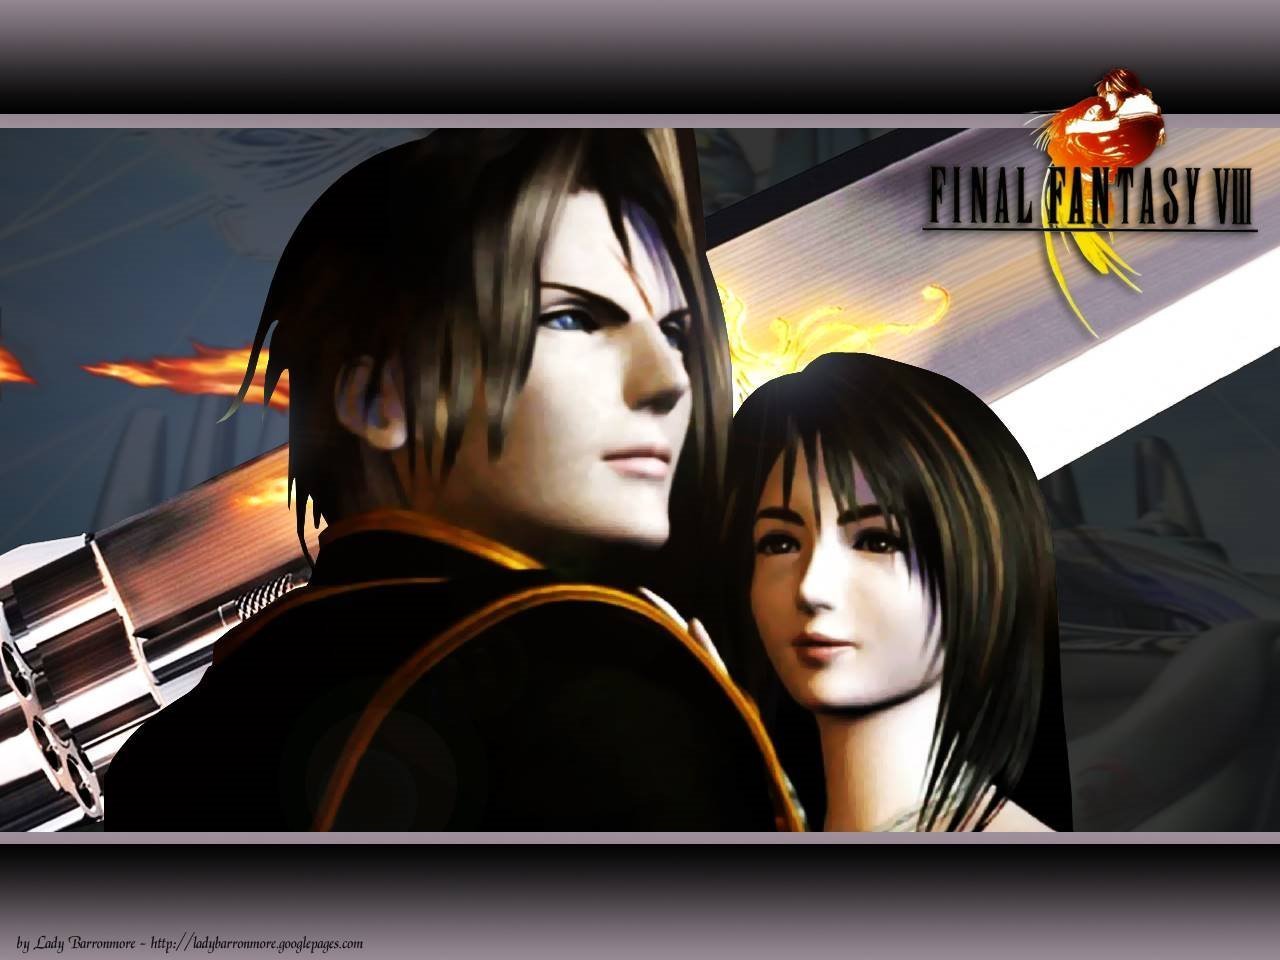 FFVIII - Final Fantasy VIII 1280x960 1024x768 800x600